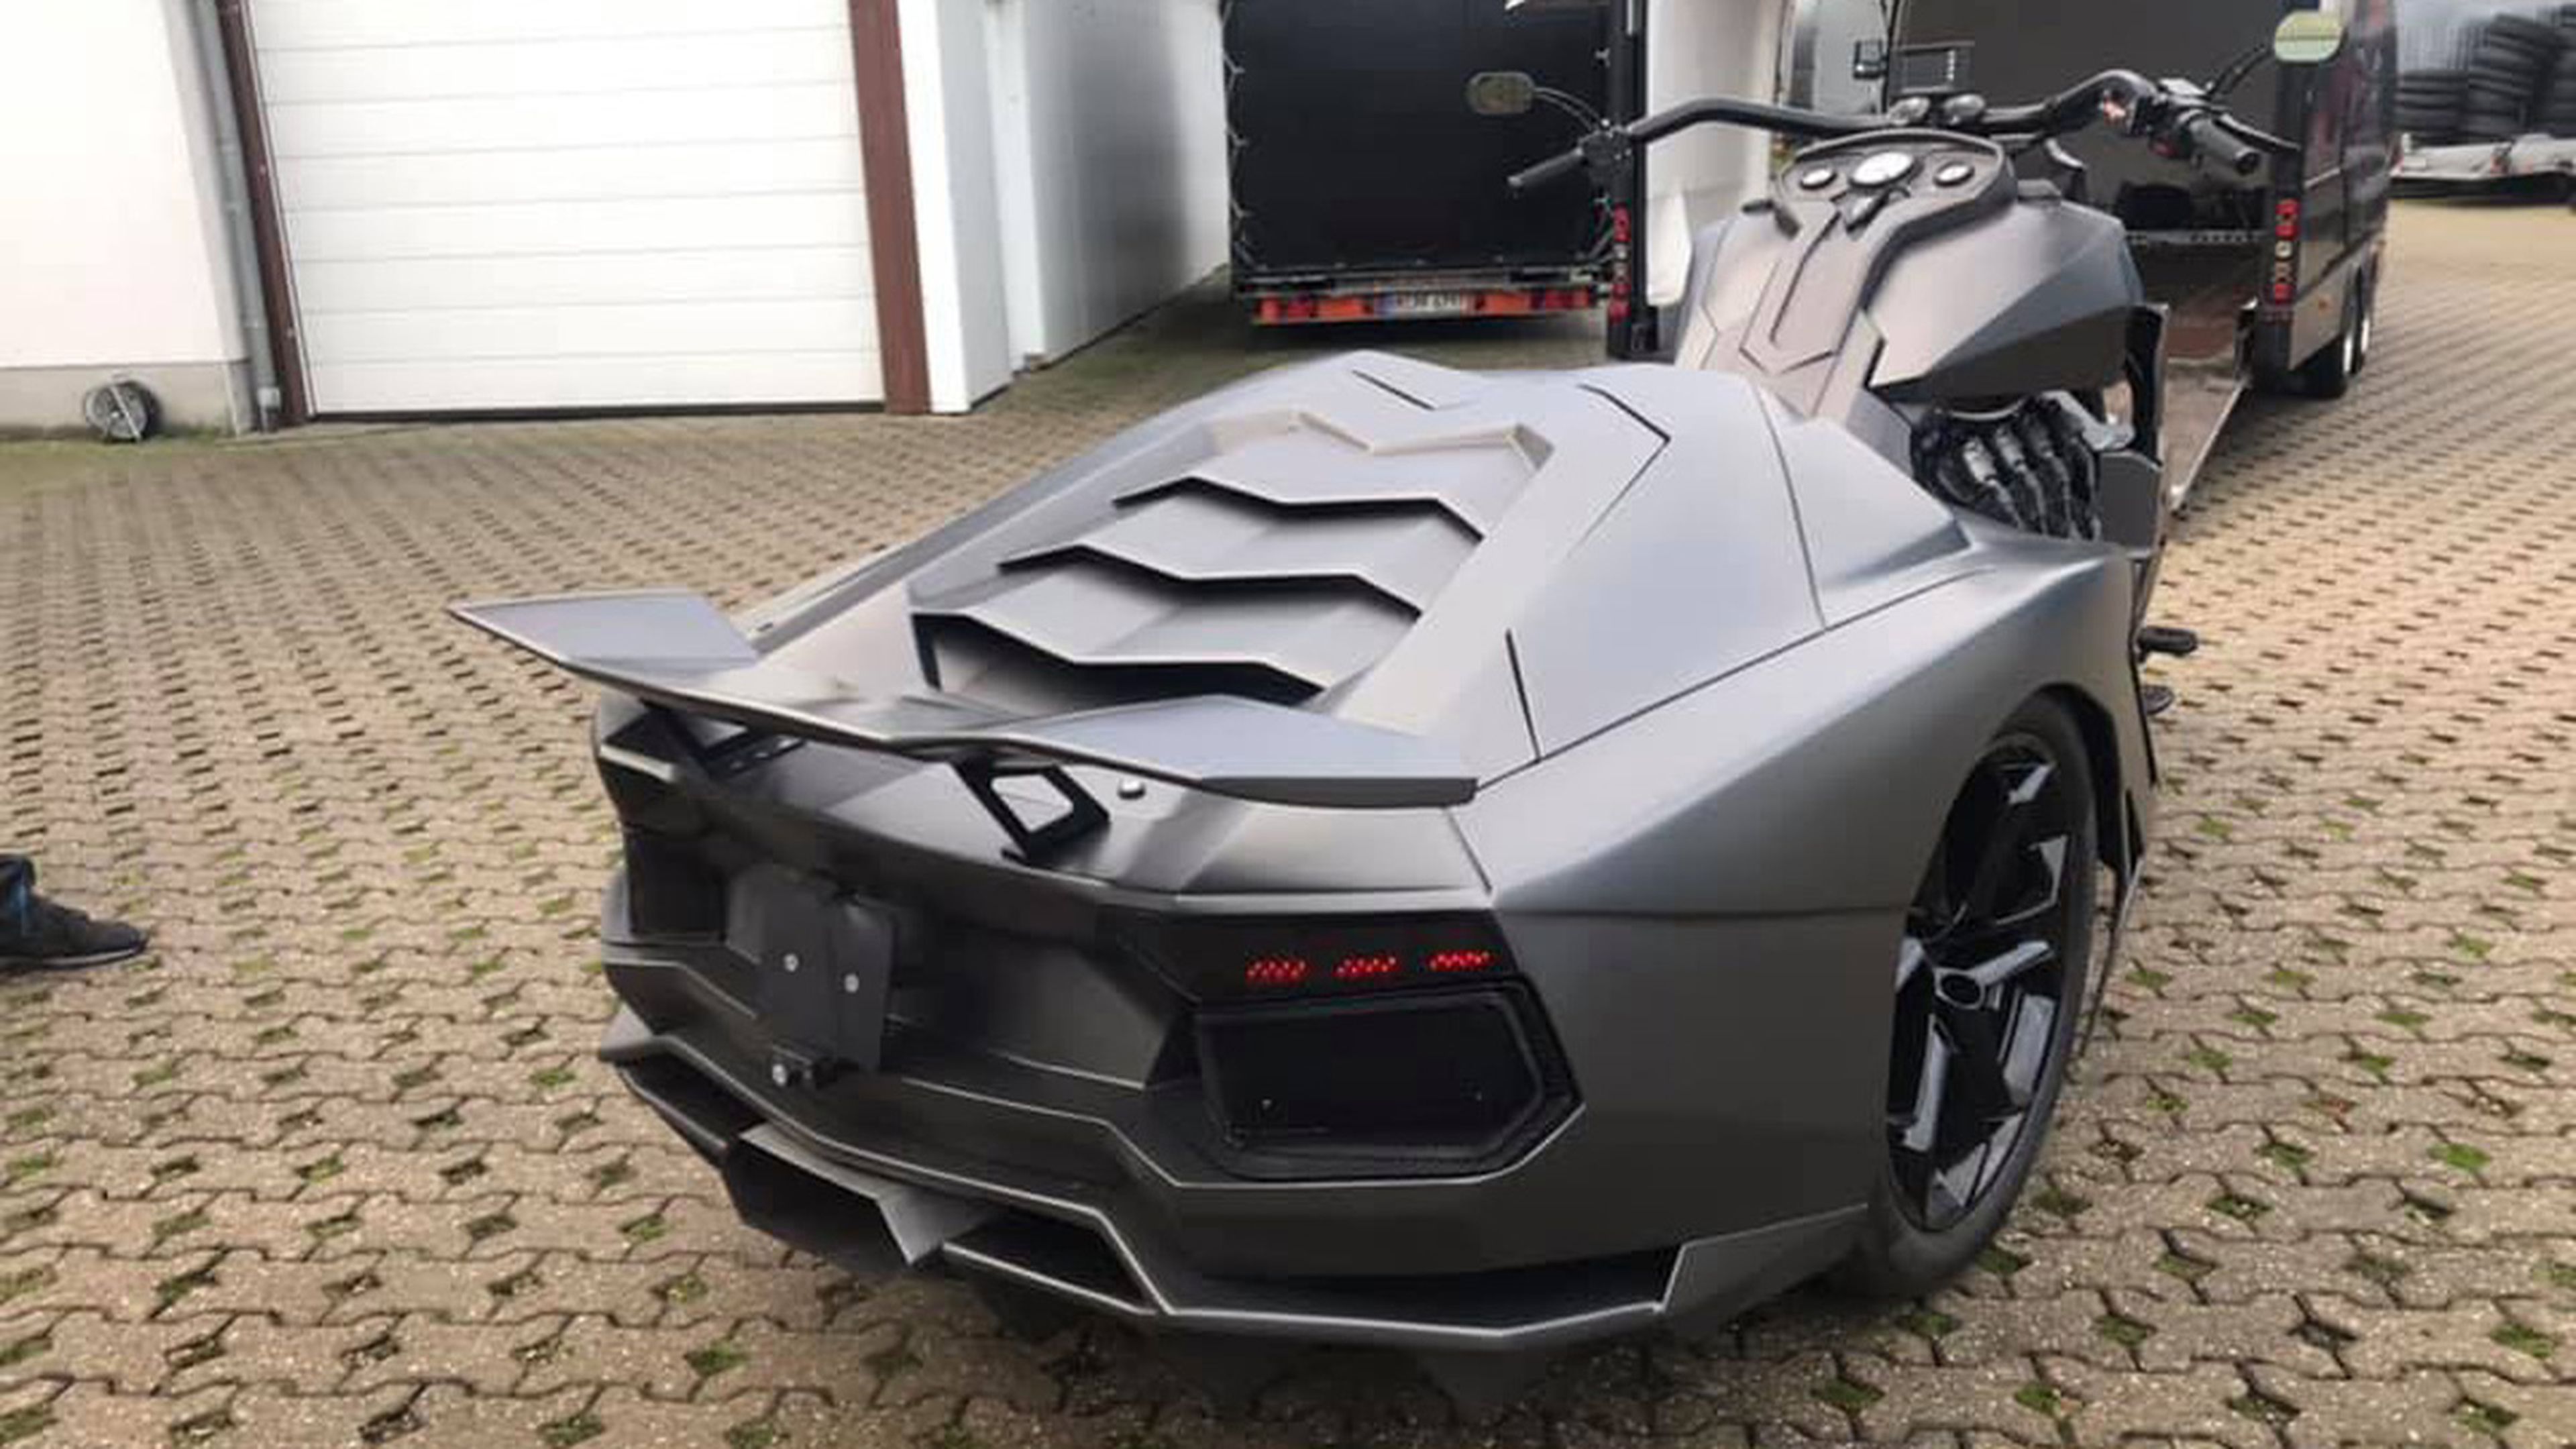 Moto Lamborghini Aventador